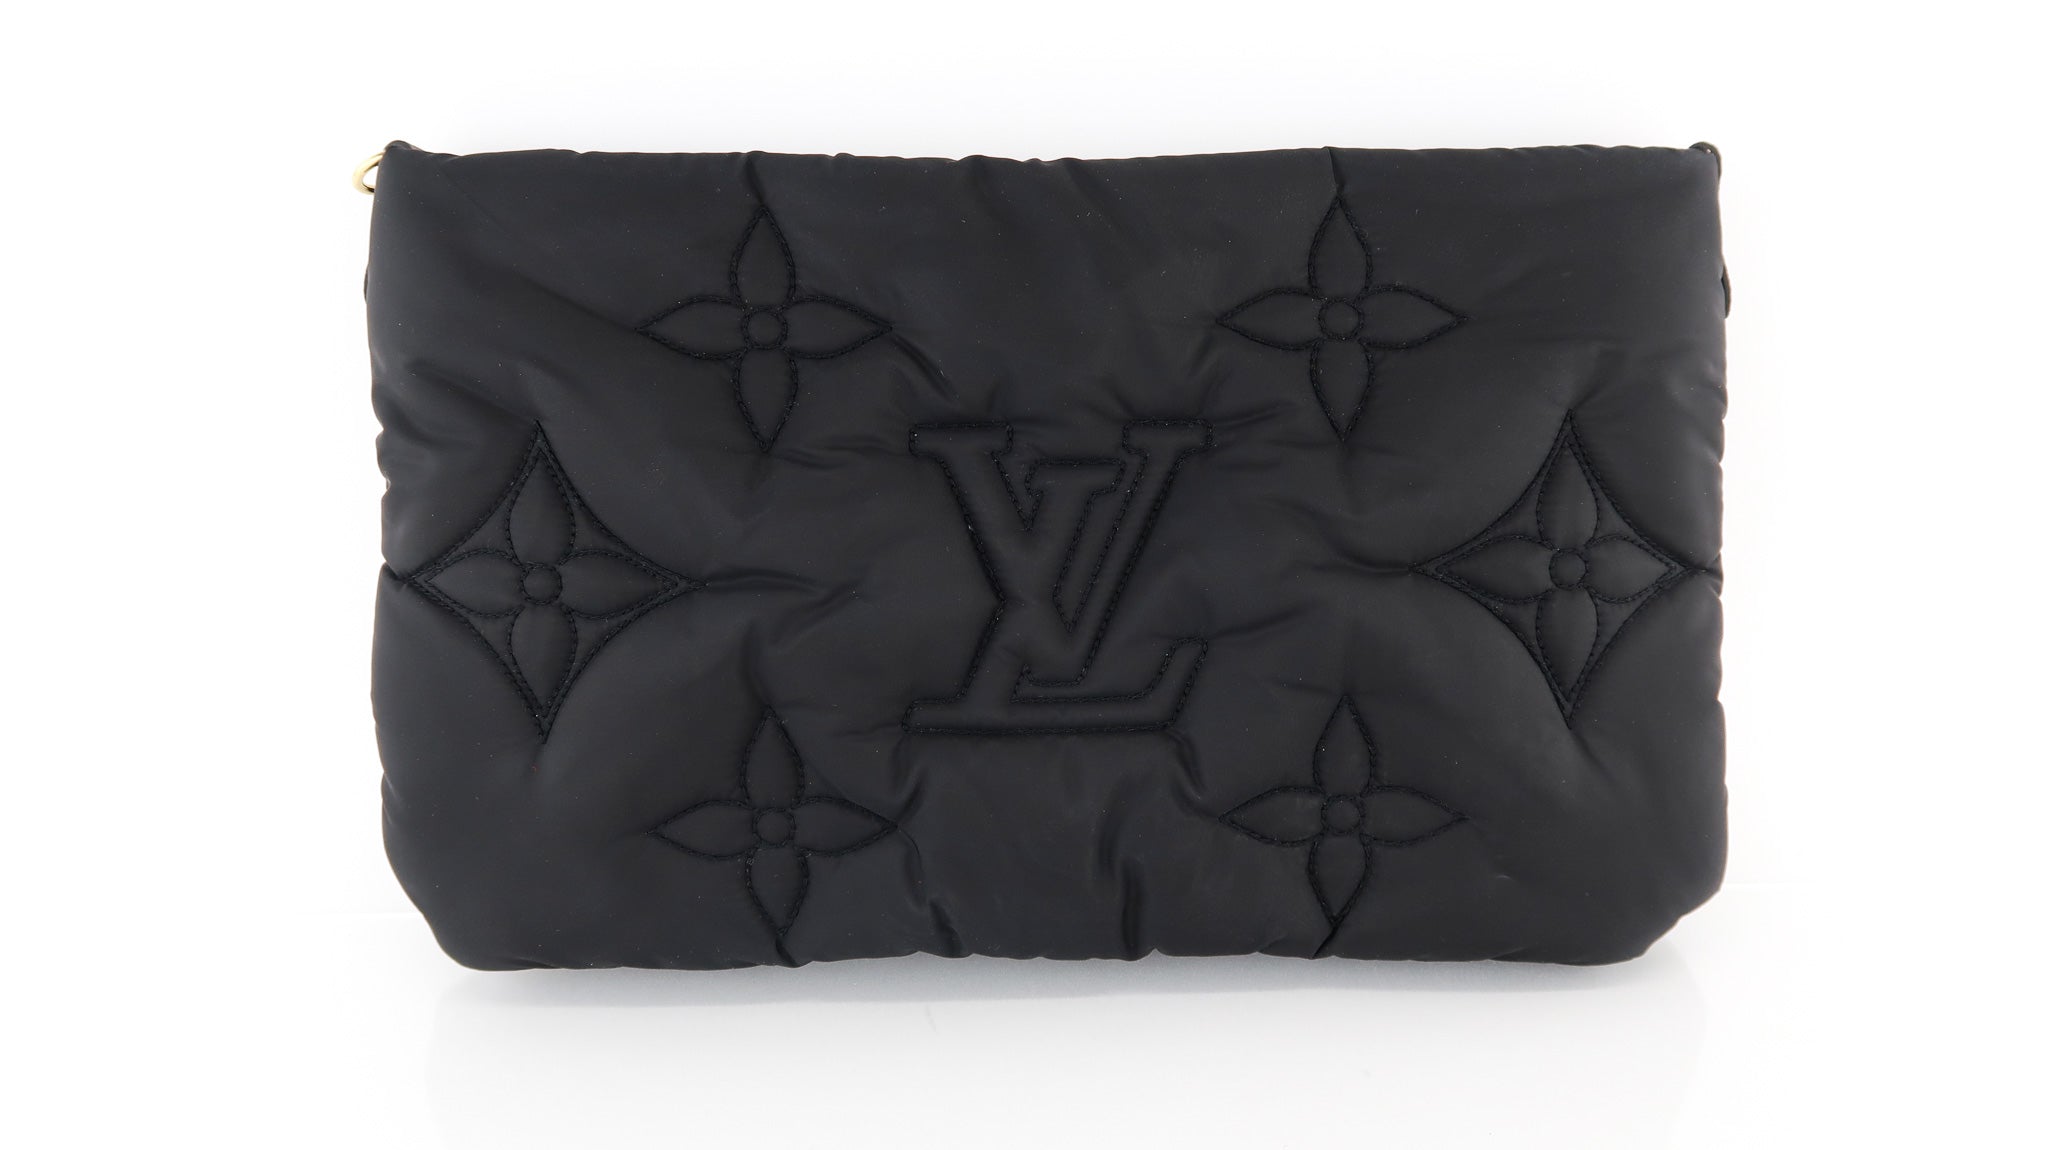 Louis Vuitton Maxi Multi Pochette Accessories Black/Fuchsia in  Econyl/Coated Canvas with Gold-tone - US